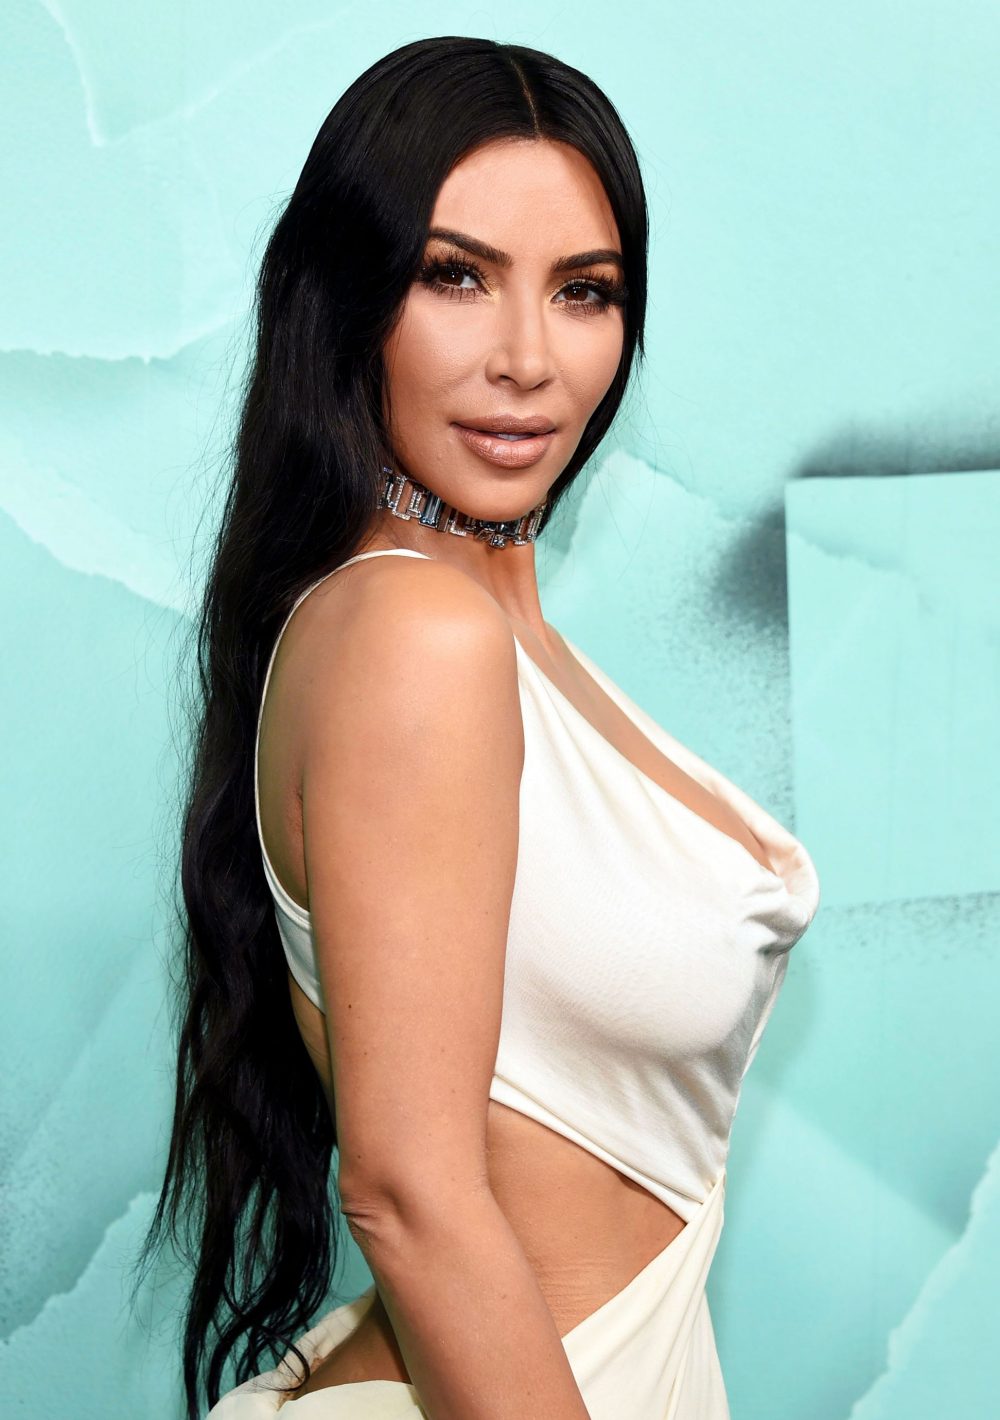 https://www.usmagazine.com/wp-content/uploads/2019/09/Kim-Kardashian-Fashion-Regrets-Promo.jpg?w=1000&quality=82&strip=all